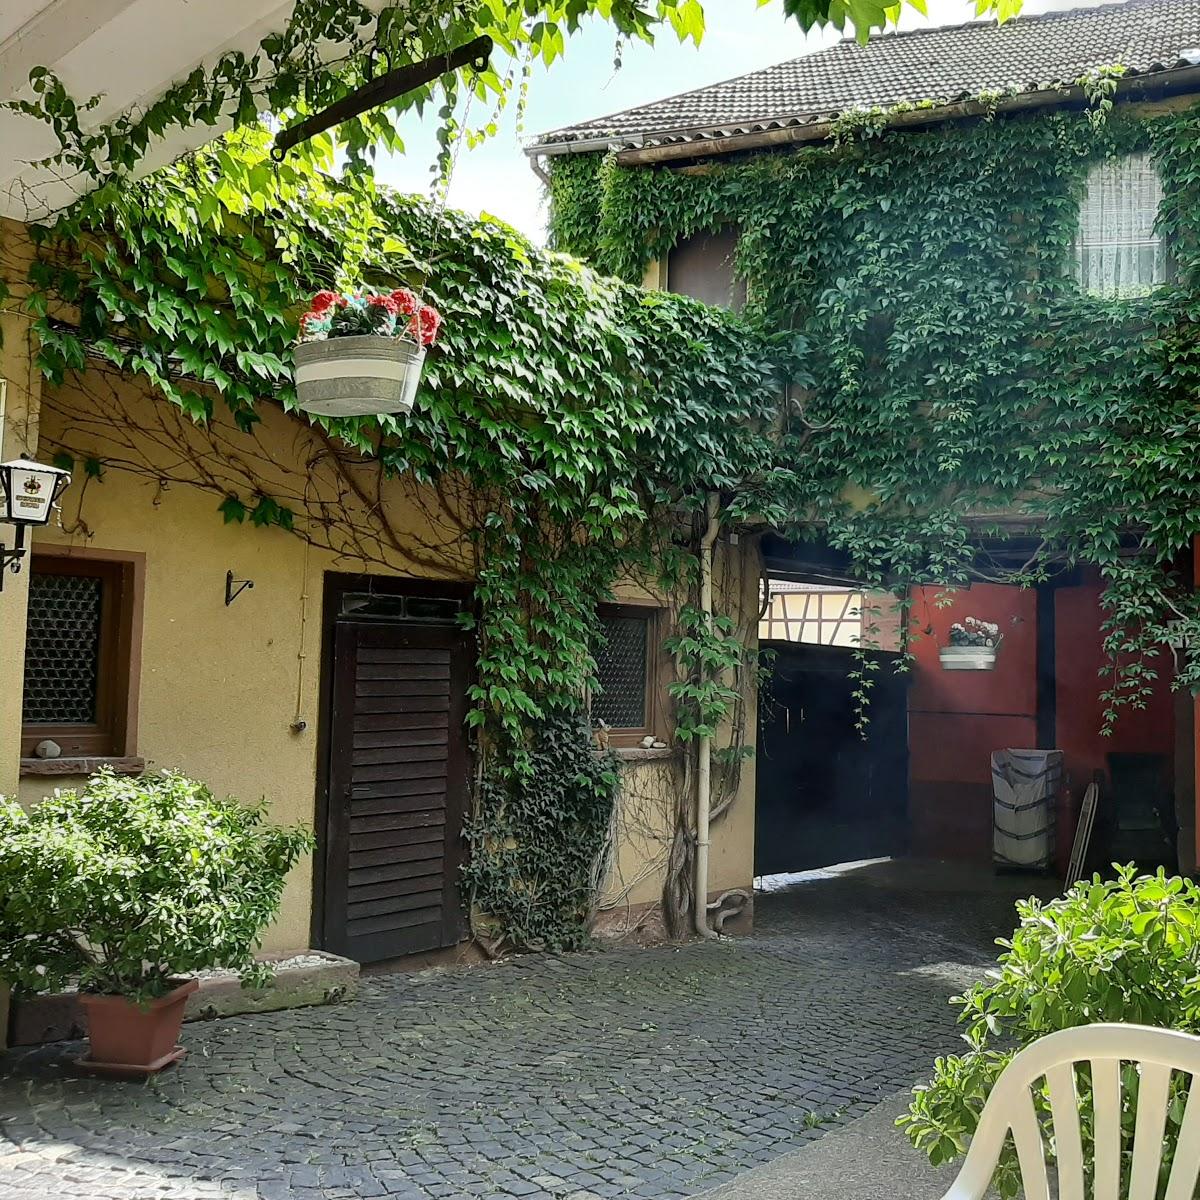 Restaurant "Landgasthof  Zum Stern " in Elfershausen